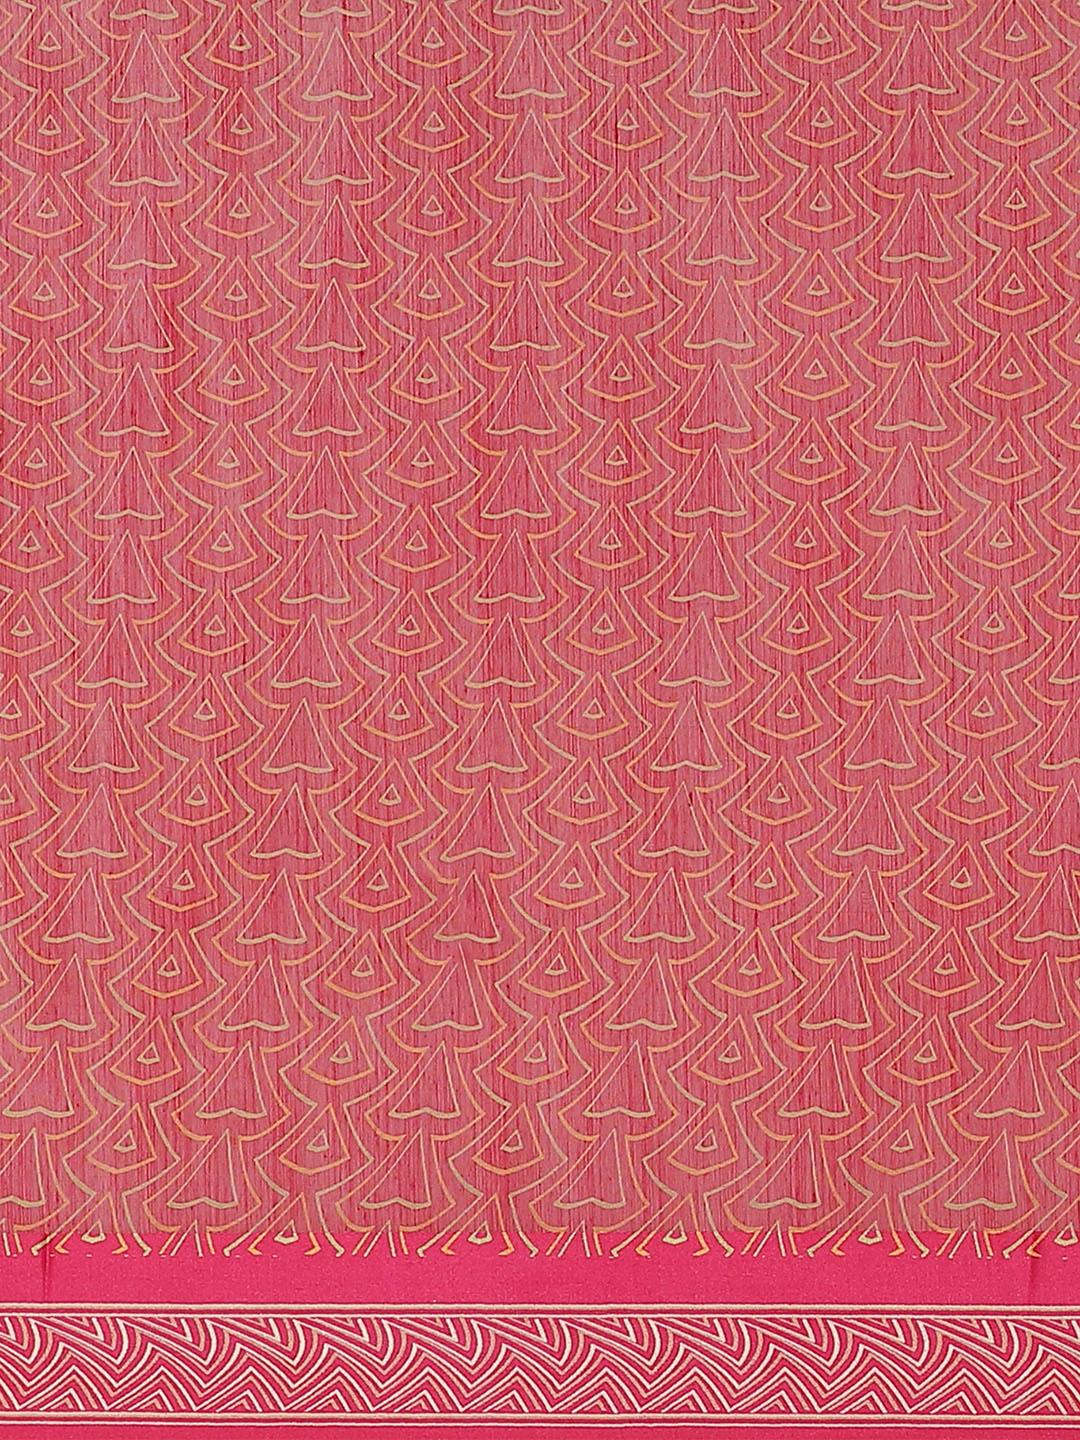 Pink Printed Cotton Saree - Libas